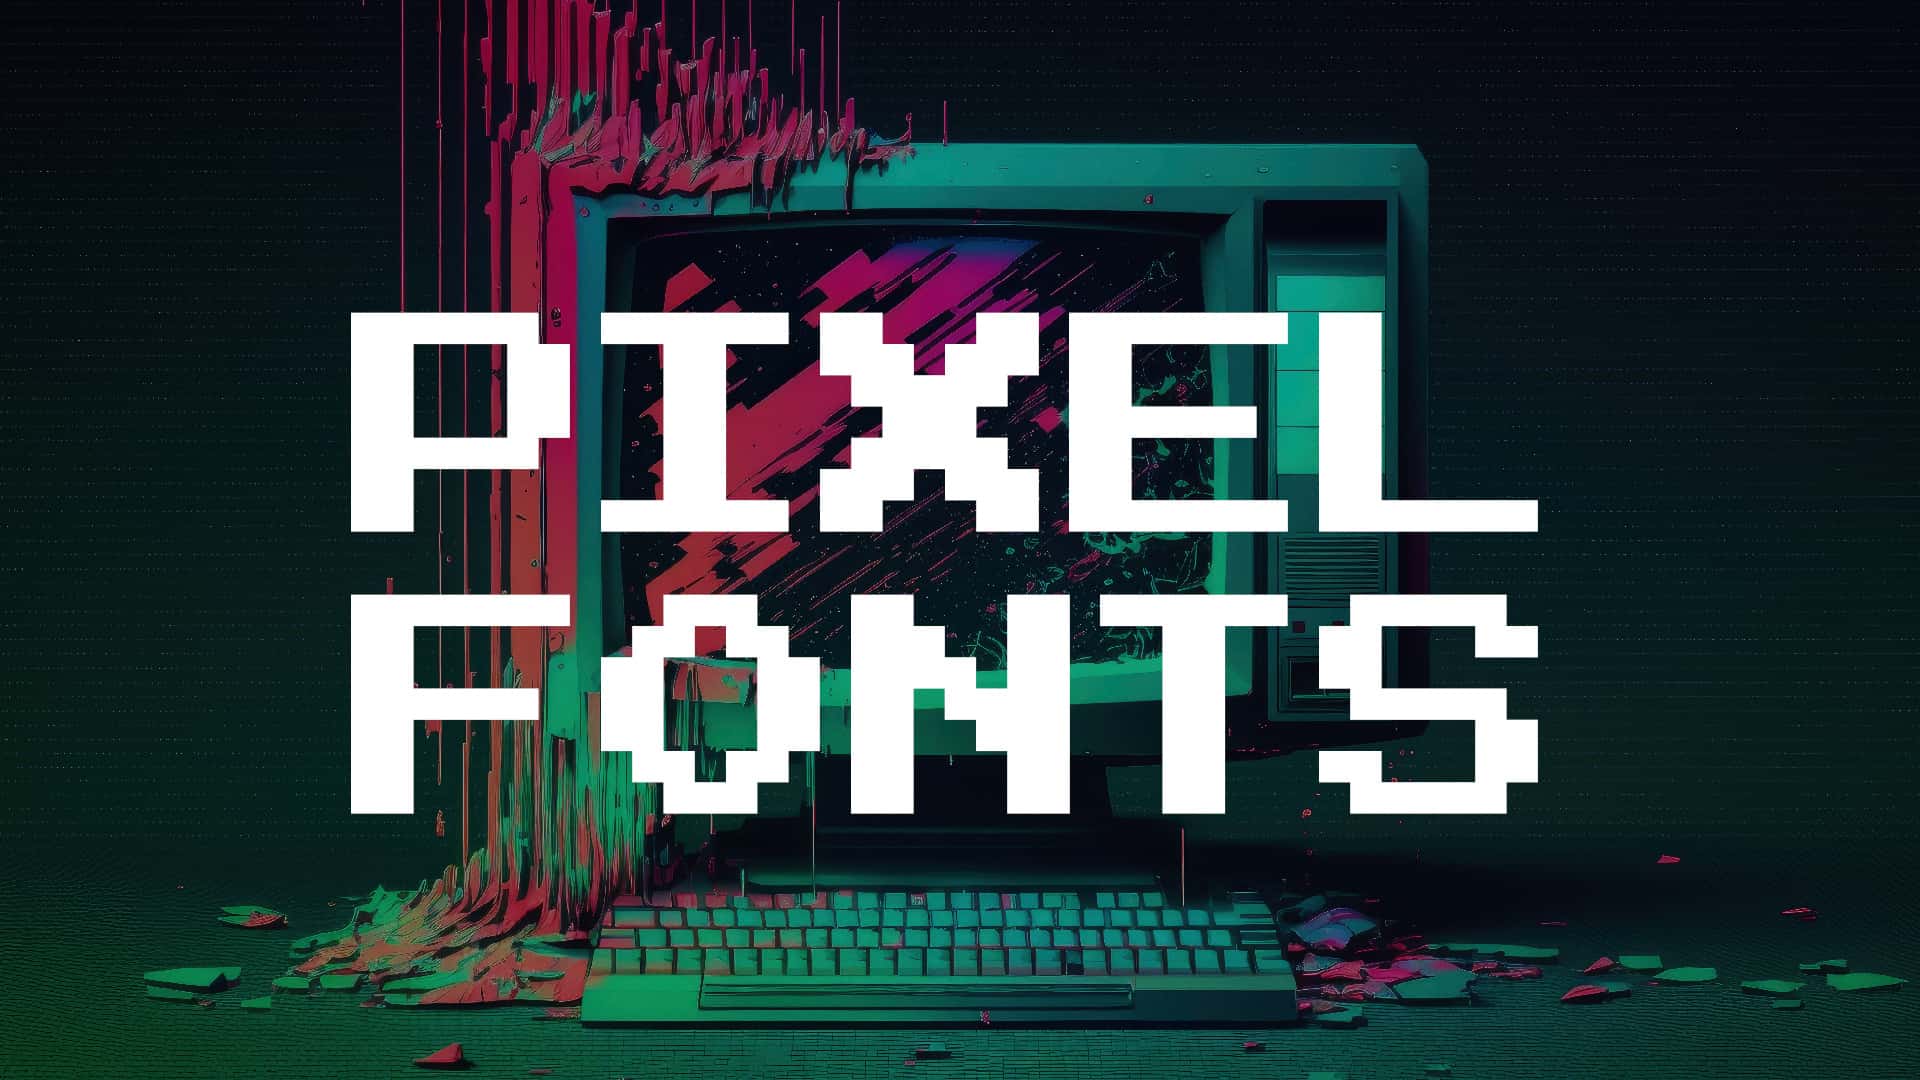 Pixel Fonts